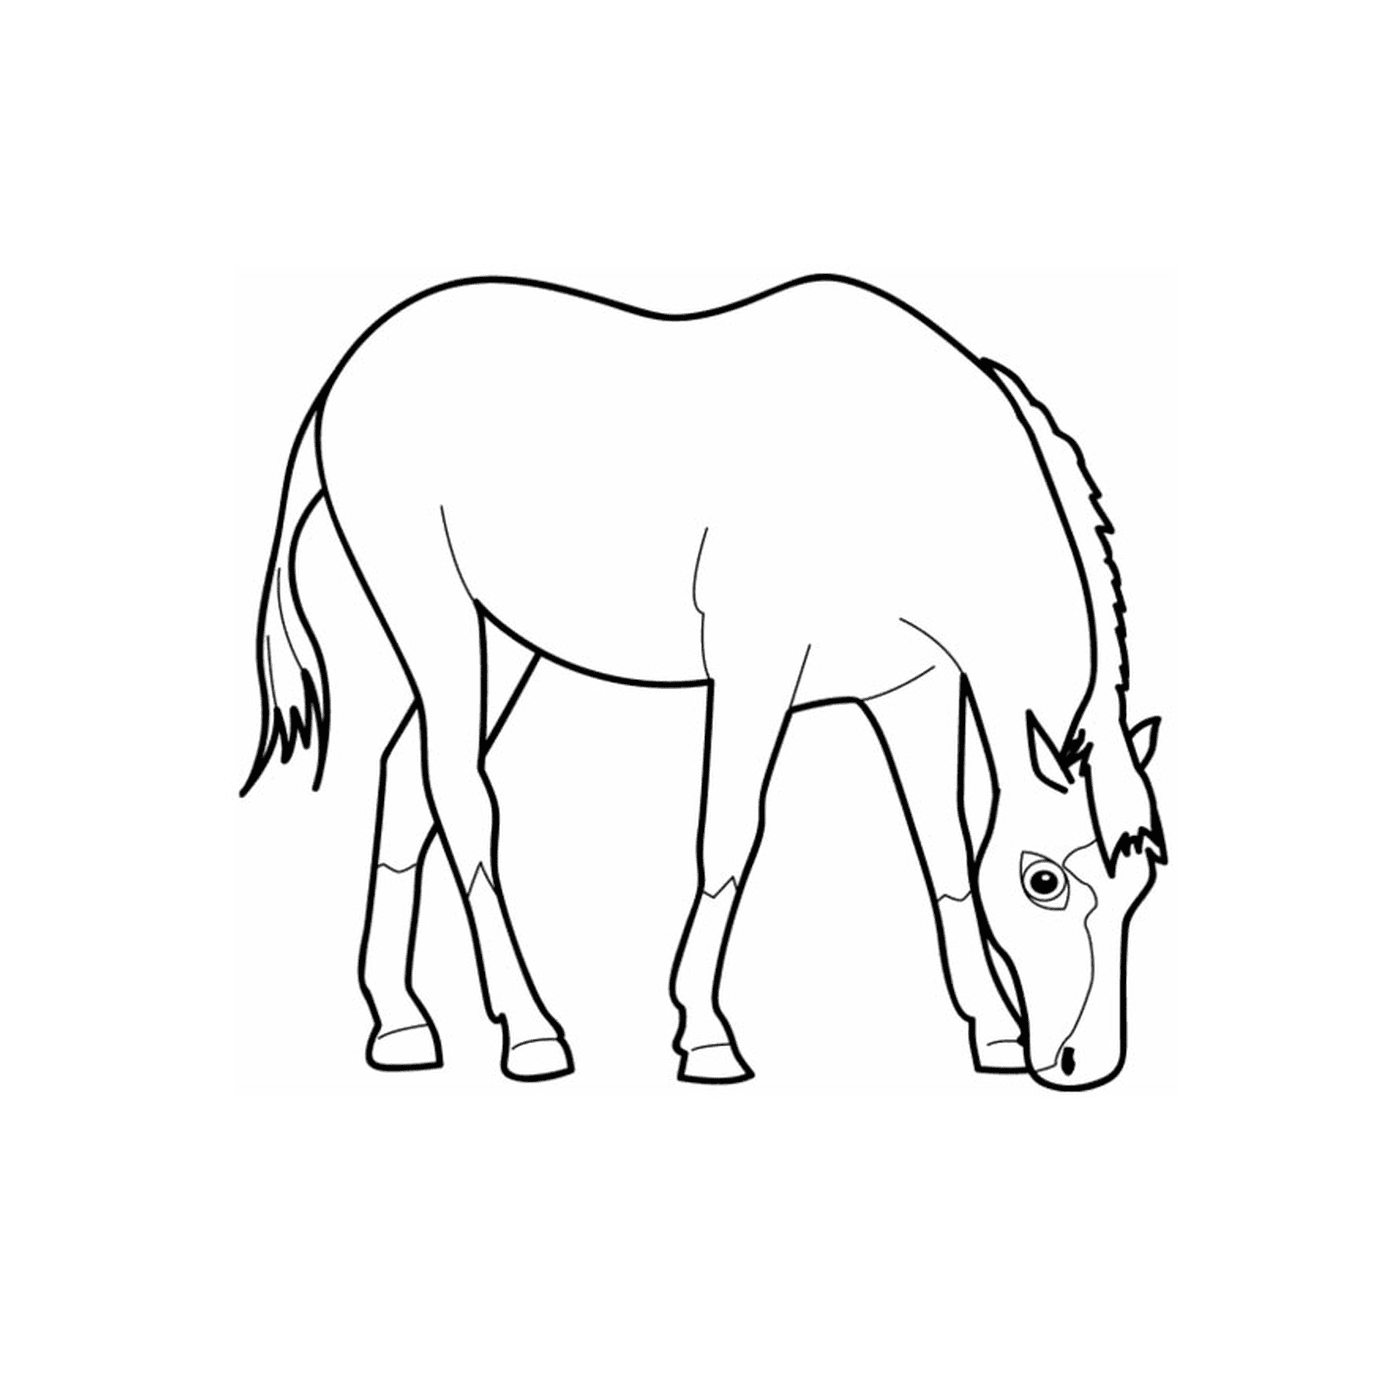  Ein Pferd - ein sprudelndes Pferd 